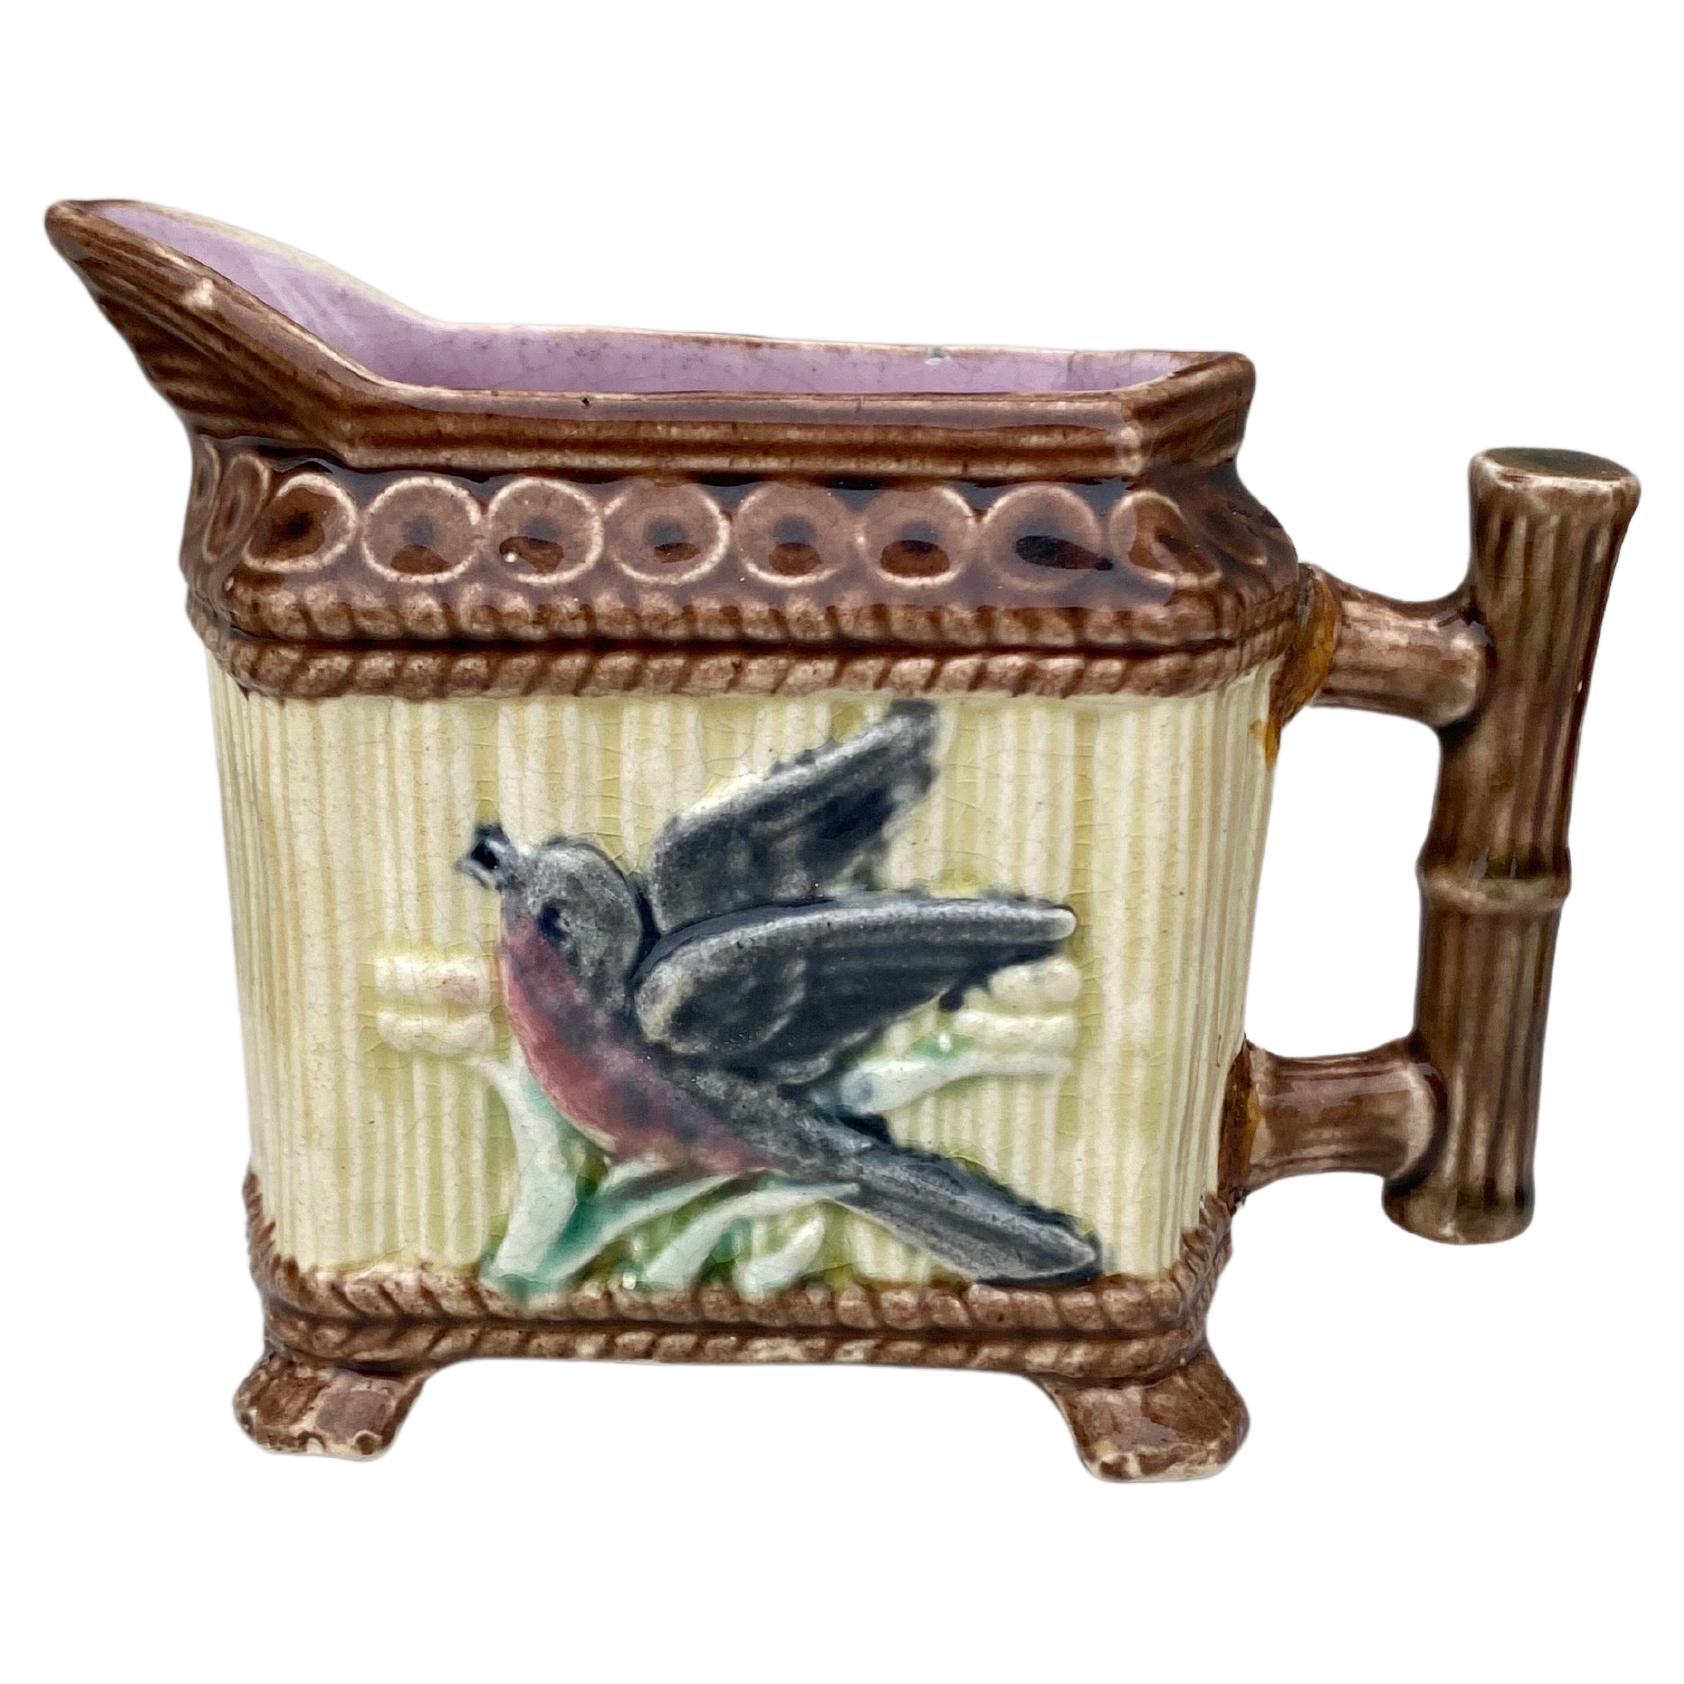 Service à thé en majolique anglaise, bambou et oiseau, vers 1890.
Théière H / 6,8 po , 8,8 po par 3,3 po
Pot à lait H / 4